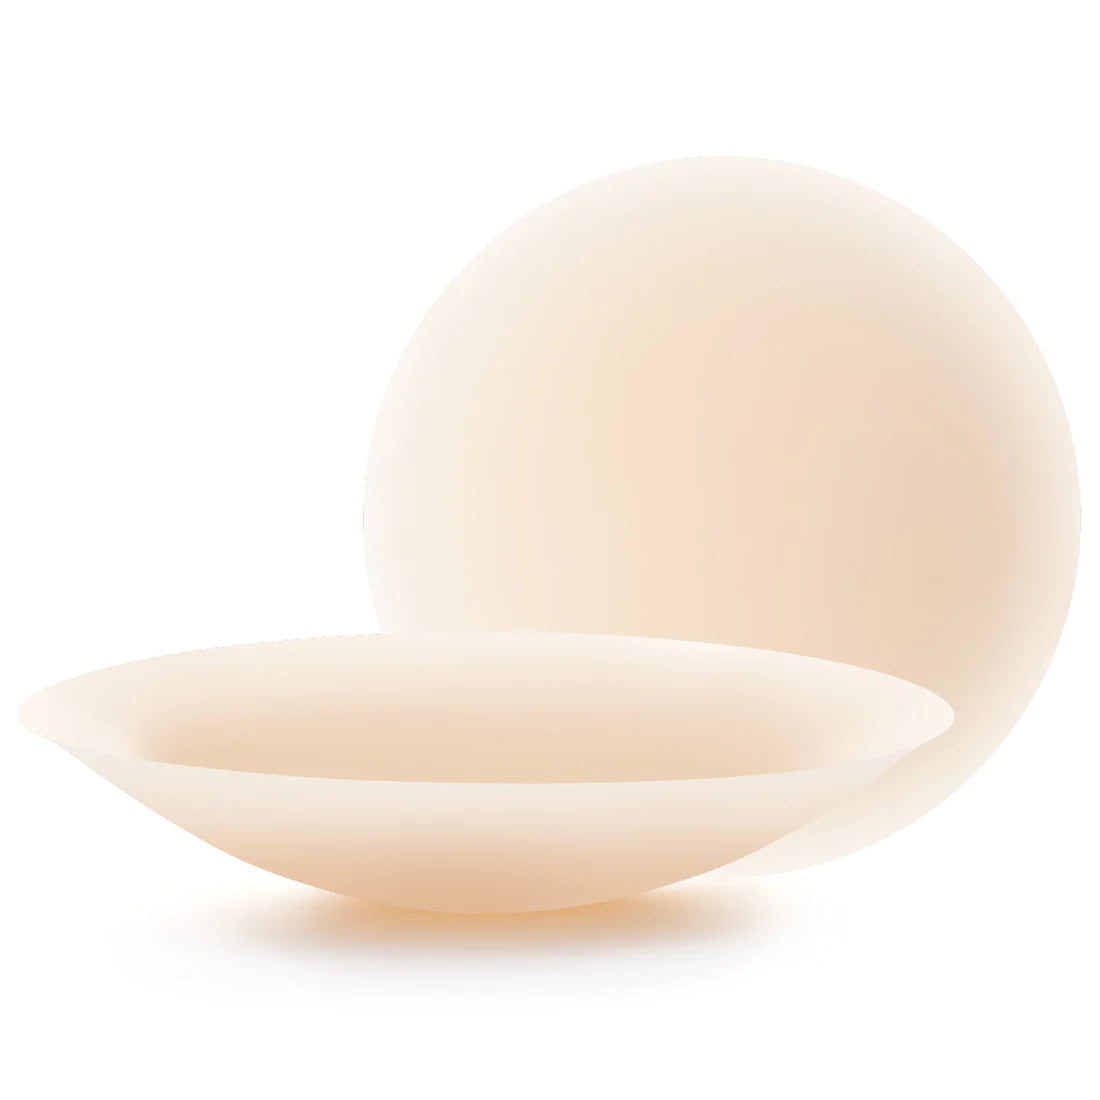 coconips cream color nipple cover